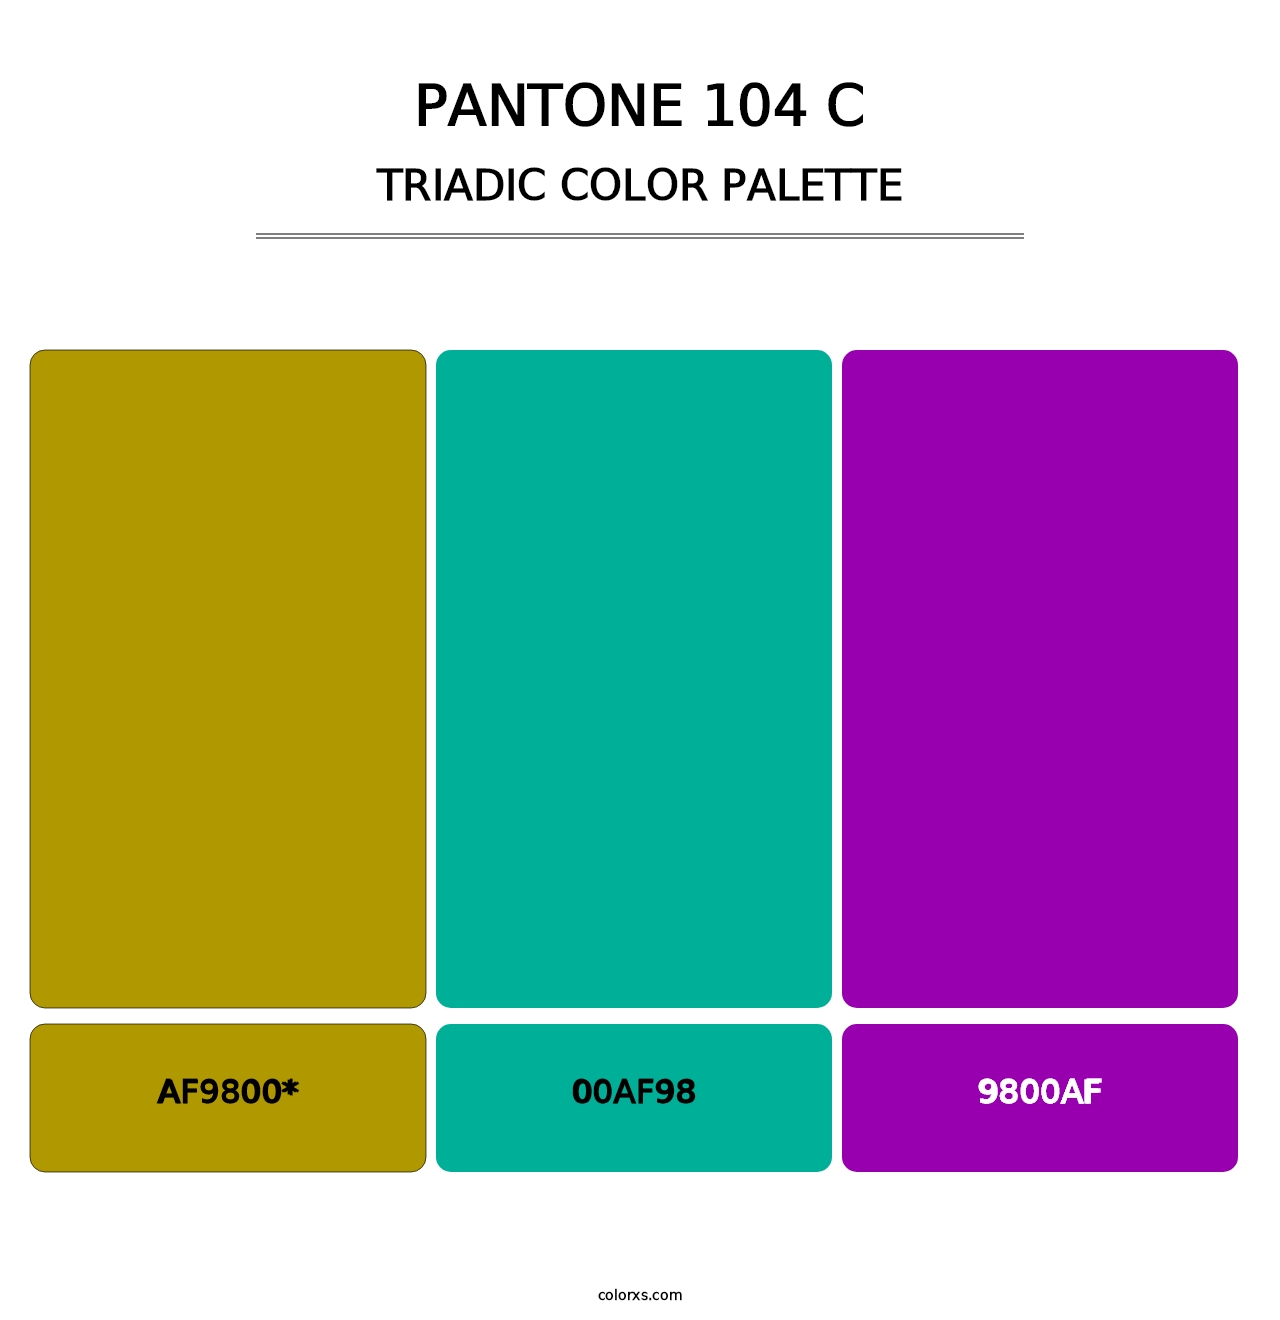 PANTONE 104 C - Triadic Color Palette